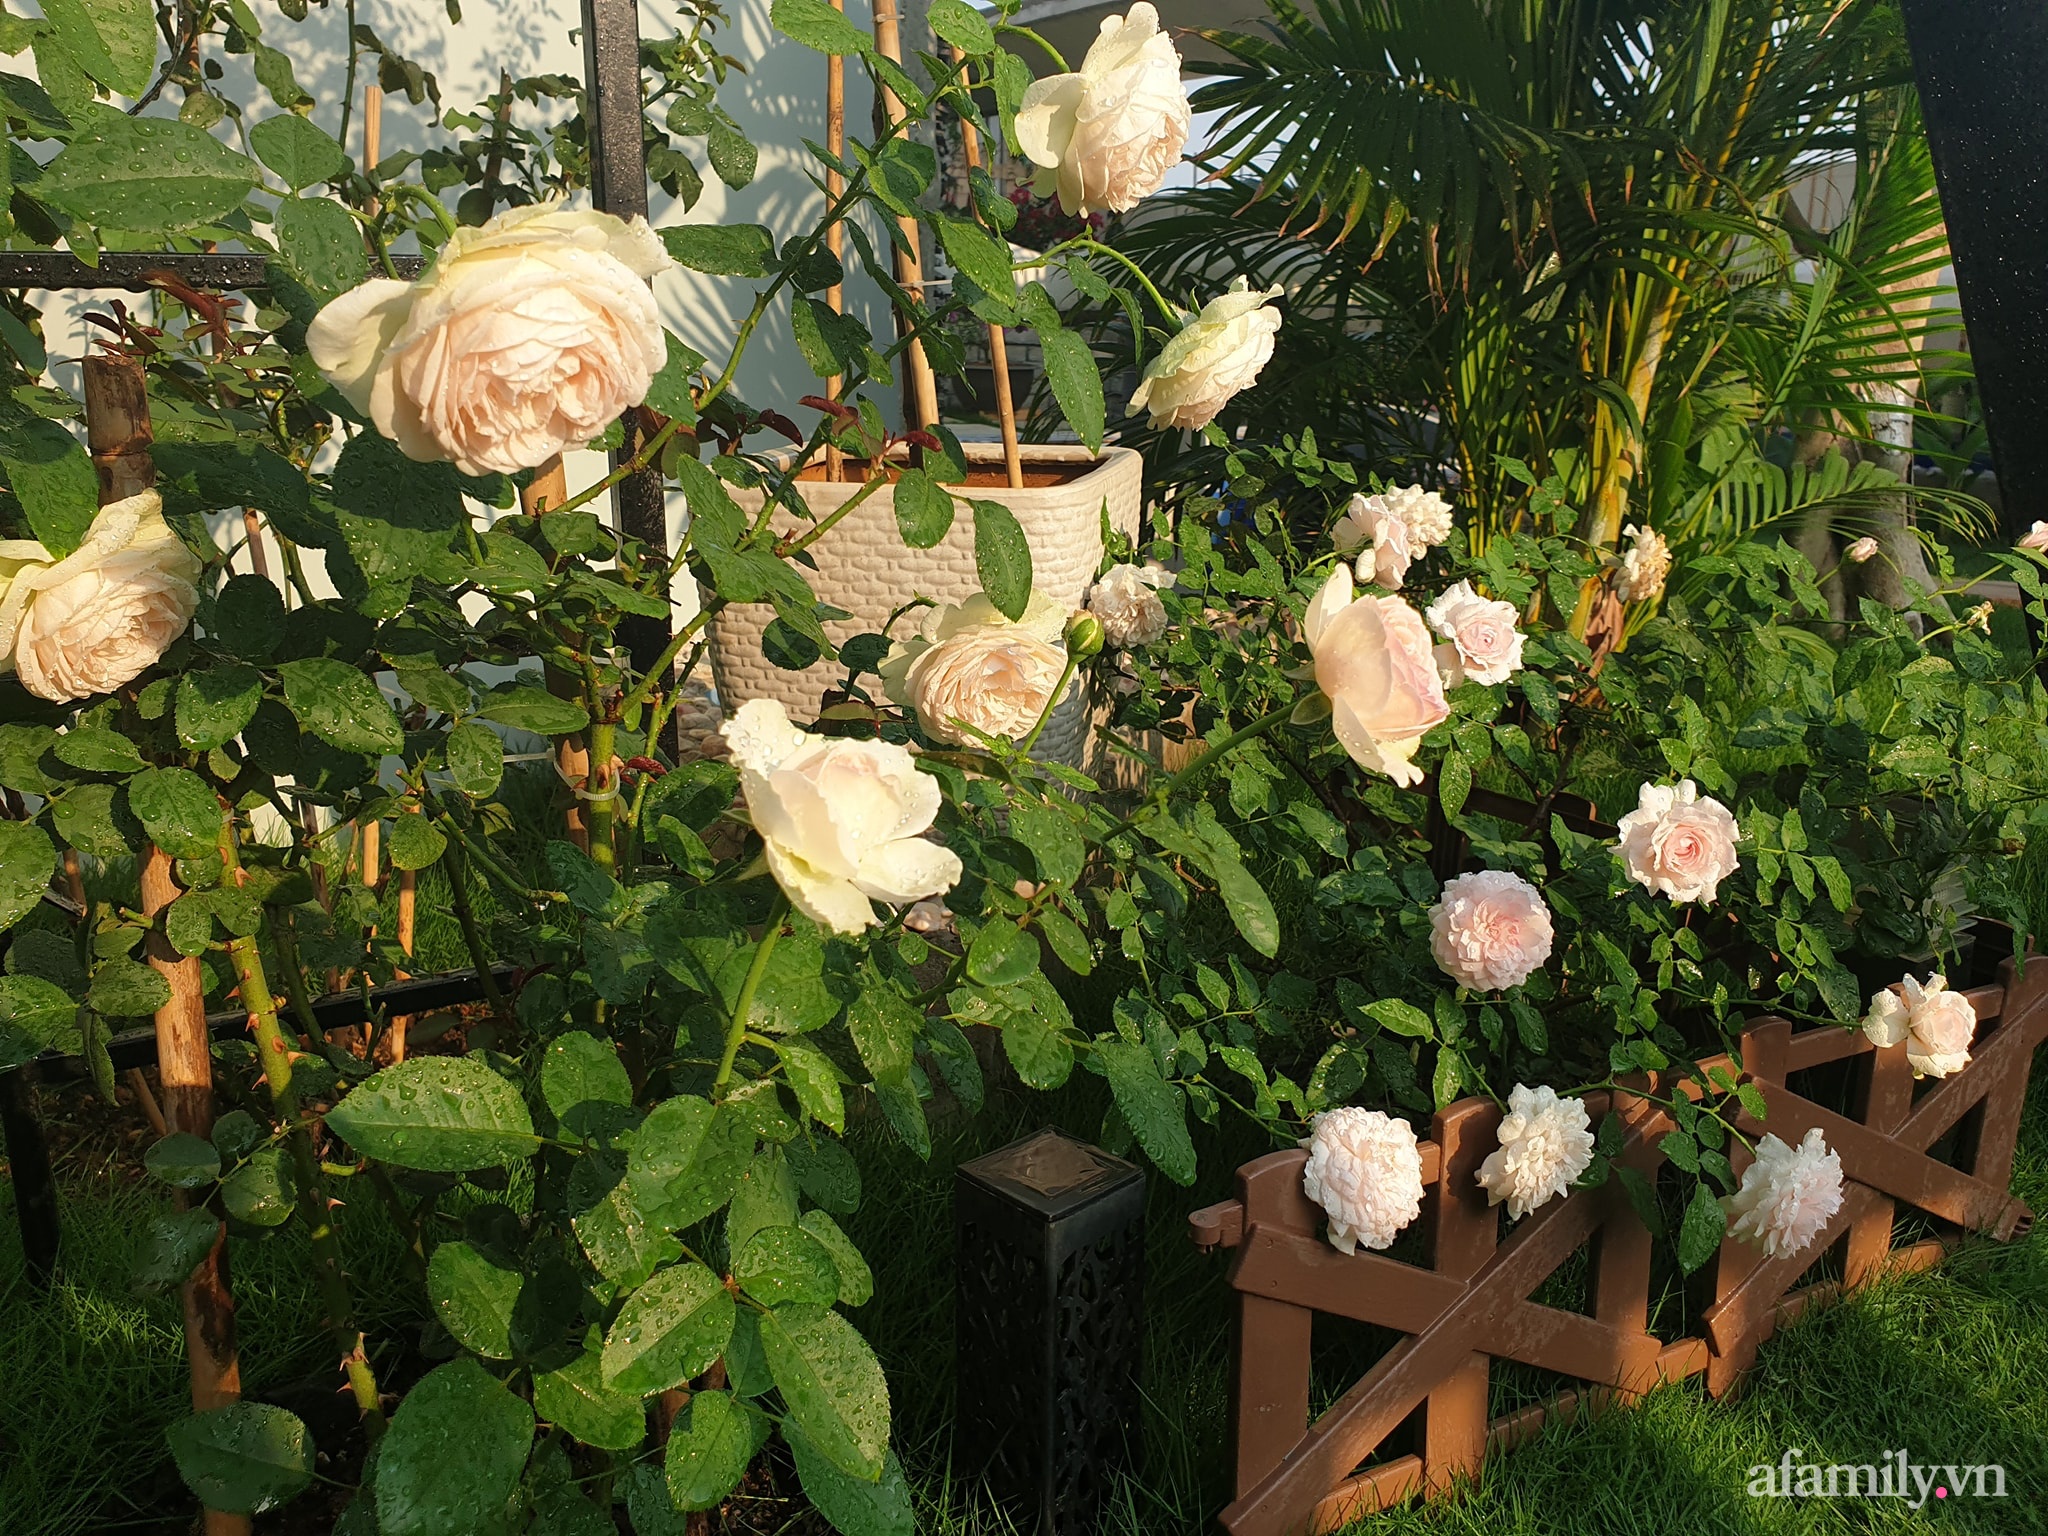 Đắm say trước vẻ đẹp ngọt lịm tim của vườn hồng rực rỡ trên sân thượng ở Bình Dương - Ảnh 13.